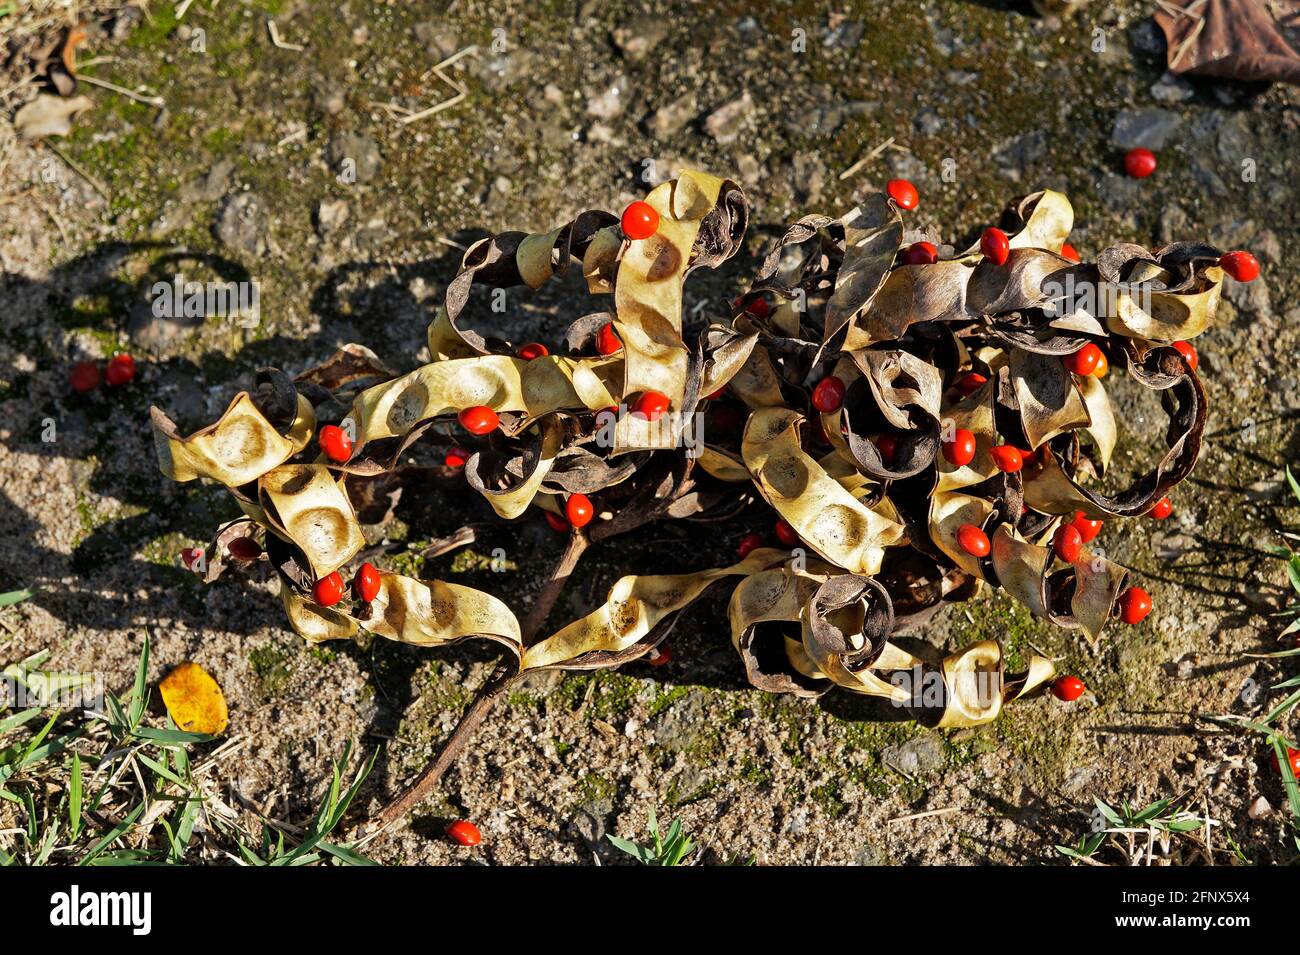 Leguminous tree seeds on floor (Adenanthera pavonina) Stock Photo